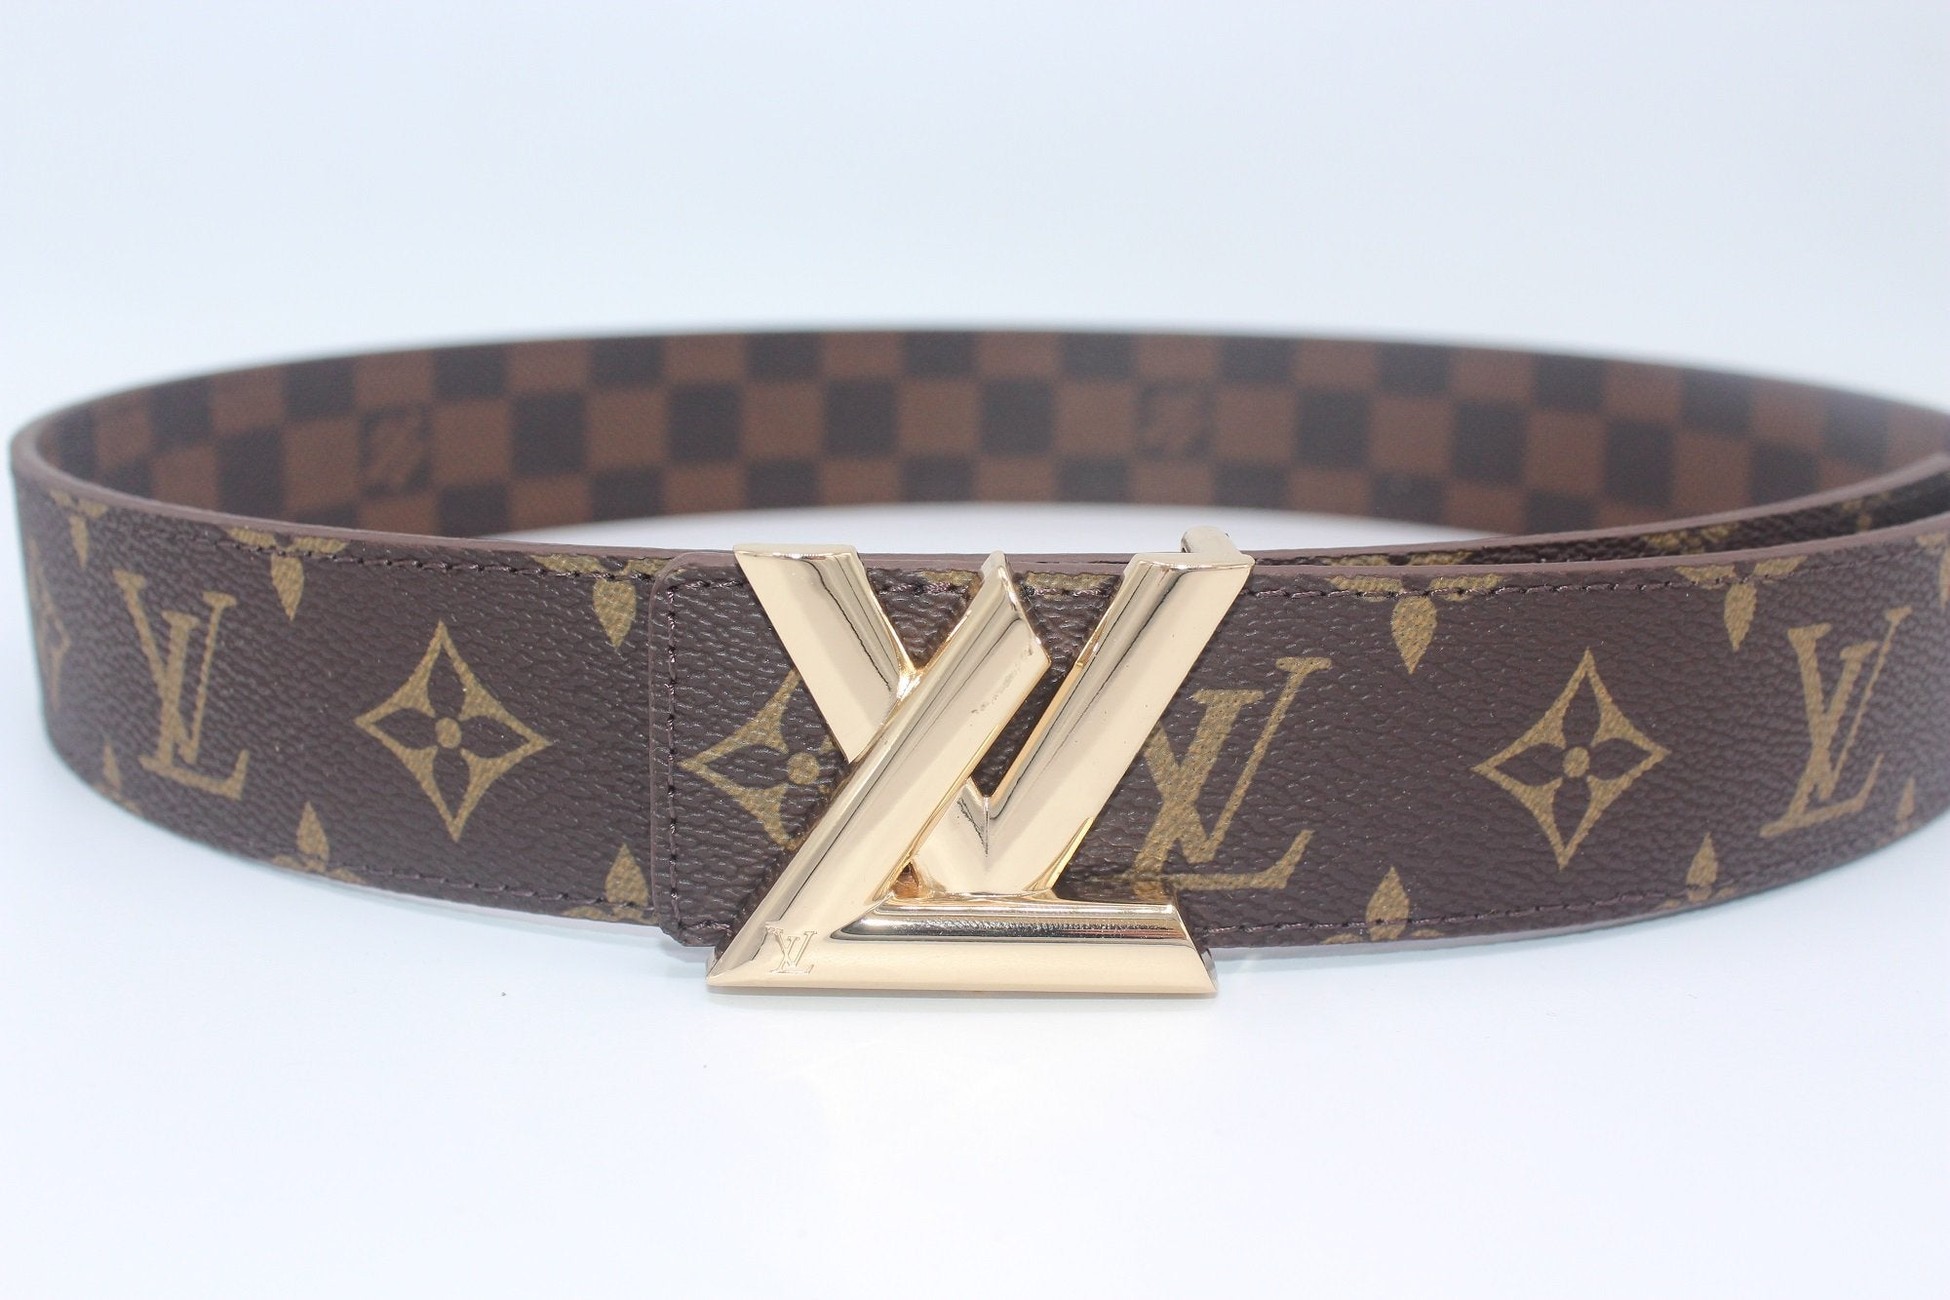 Louis Vuitton men's belt size 120 brown reversible